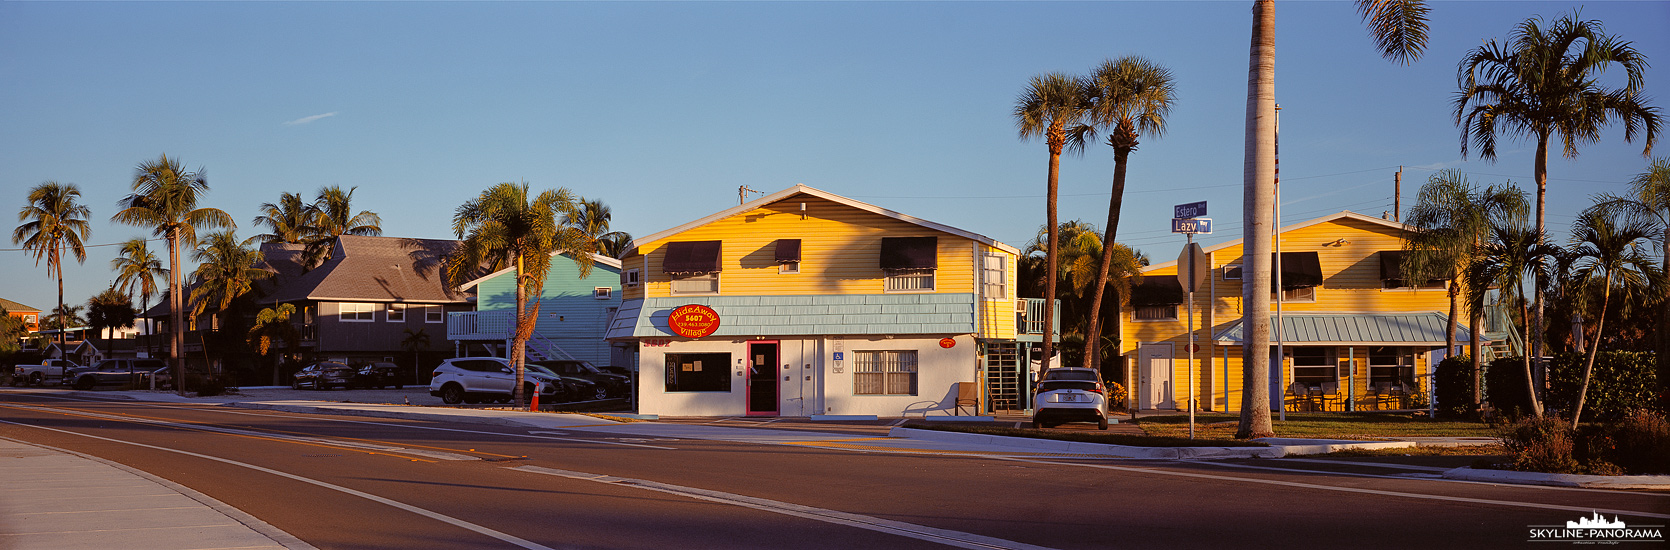 Florida Panorama - Hideaway Village Motel in den für Florida typischen Farben, gesehen in Fort Myers Beach im November 2021. 